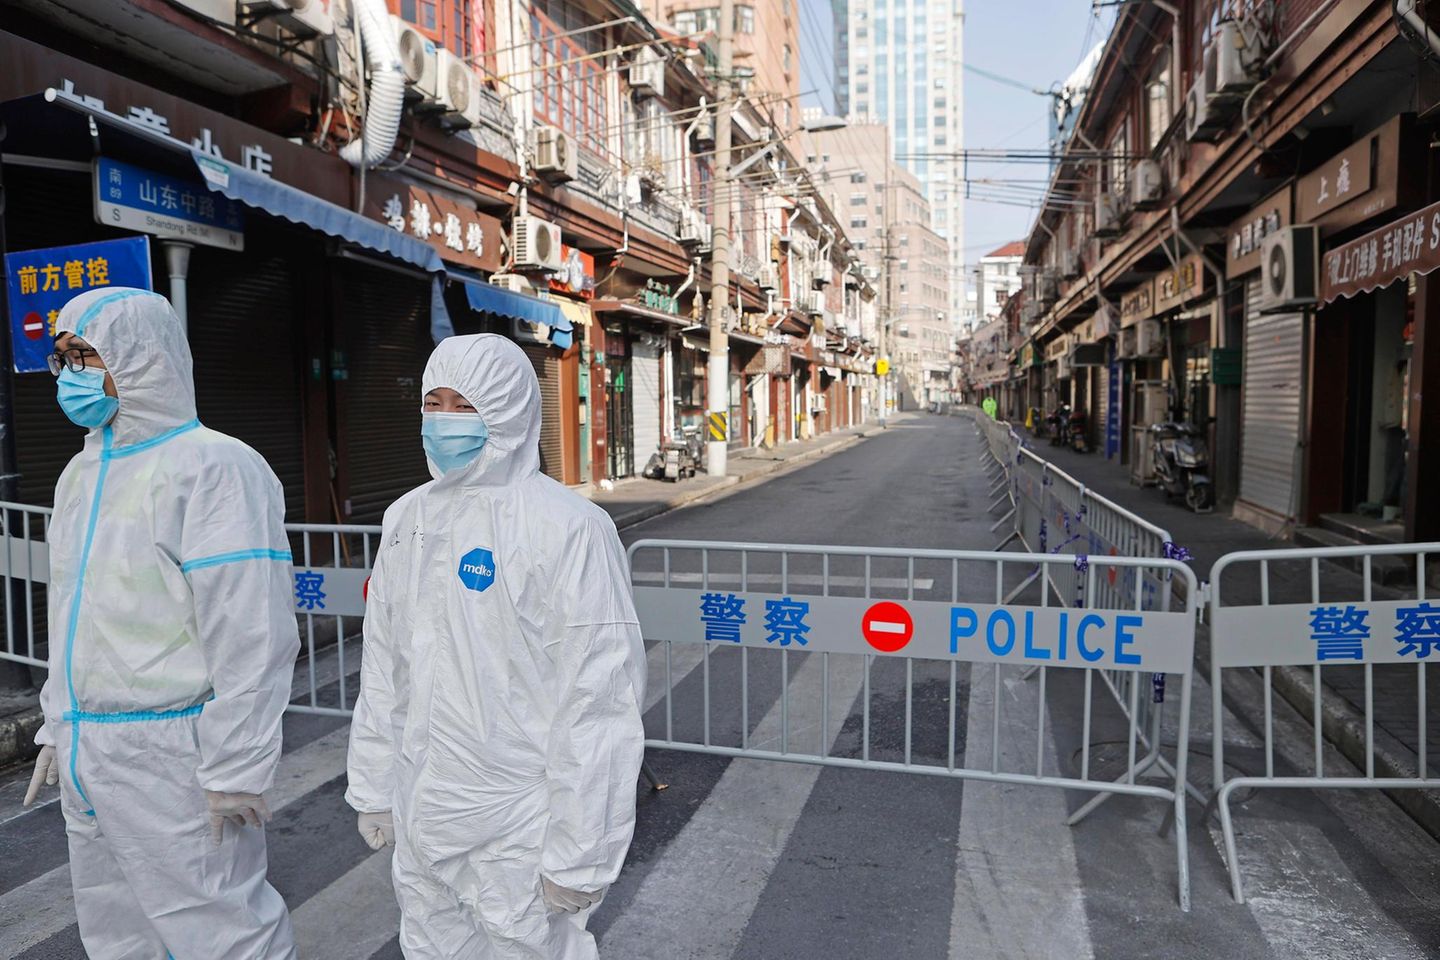 Polizisten in Schutzkleidung bewachen ein Wohnviertel in Schanghai